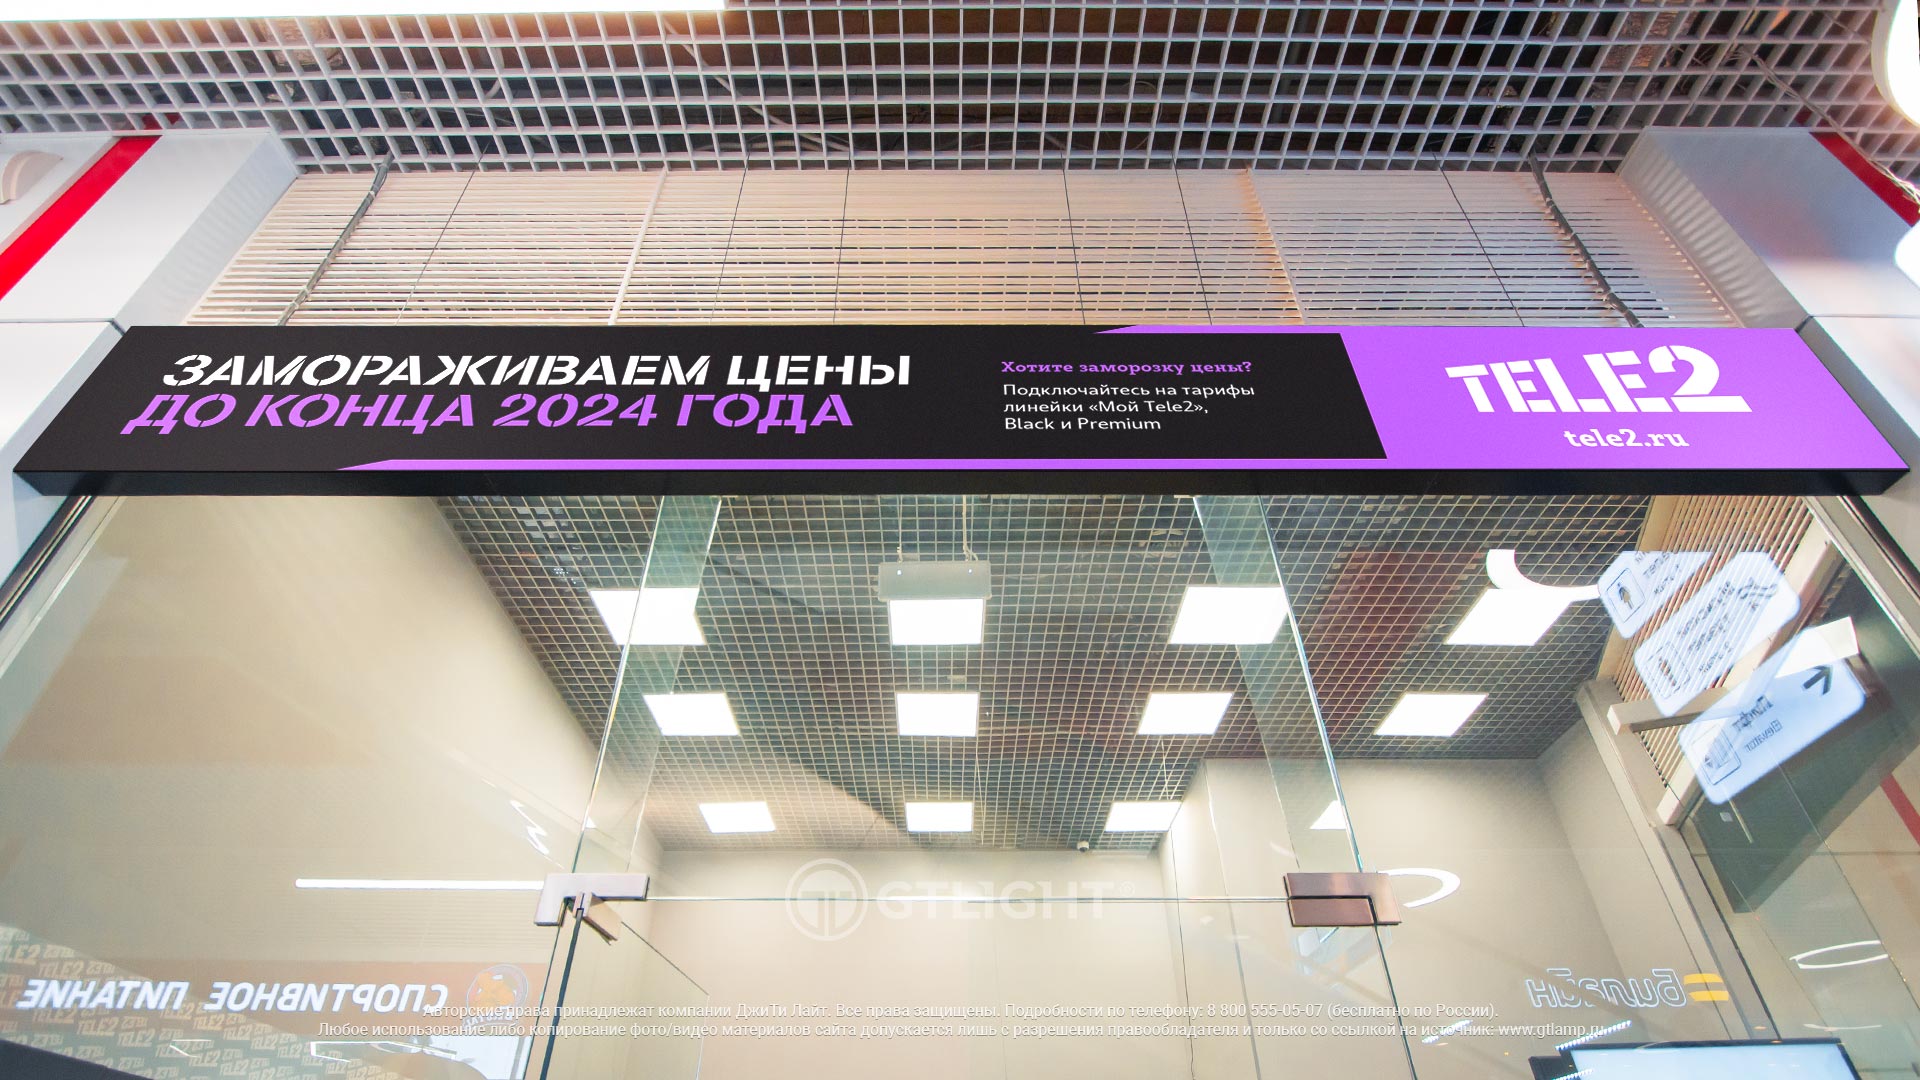 Светодиодная видеовывеска, Санкт-Петербург, «Tele2», ТК «Парнас Сити», фото 3